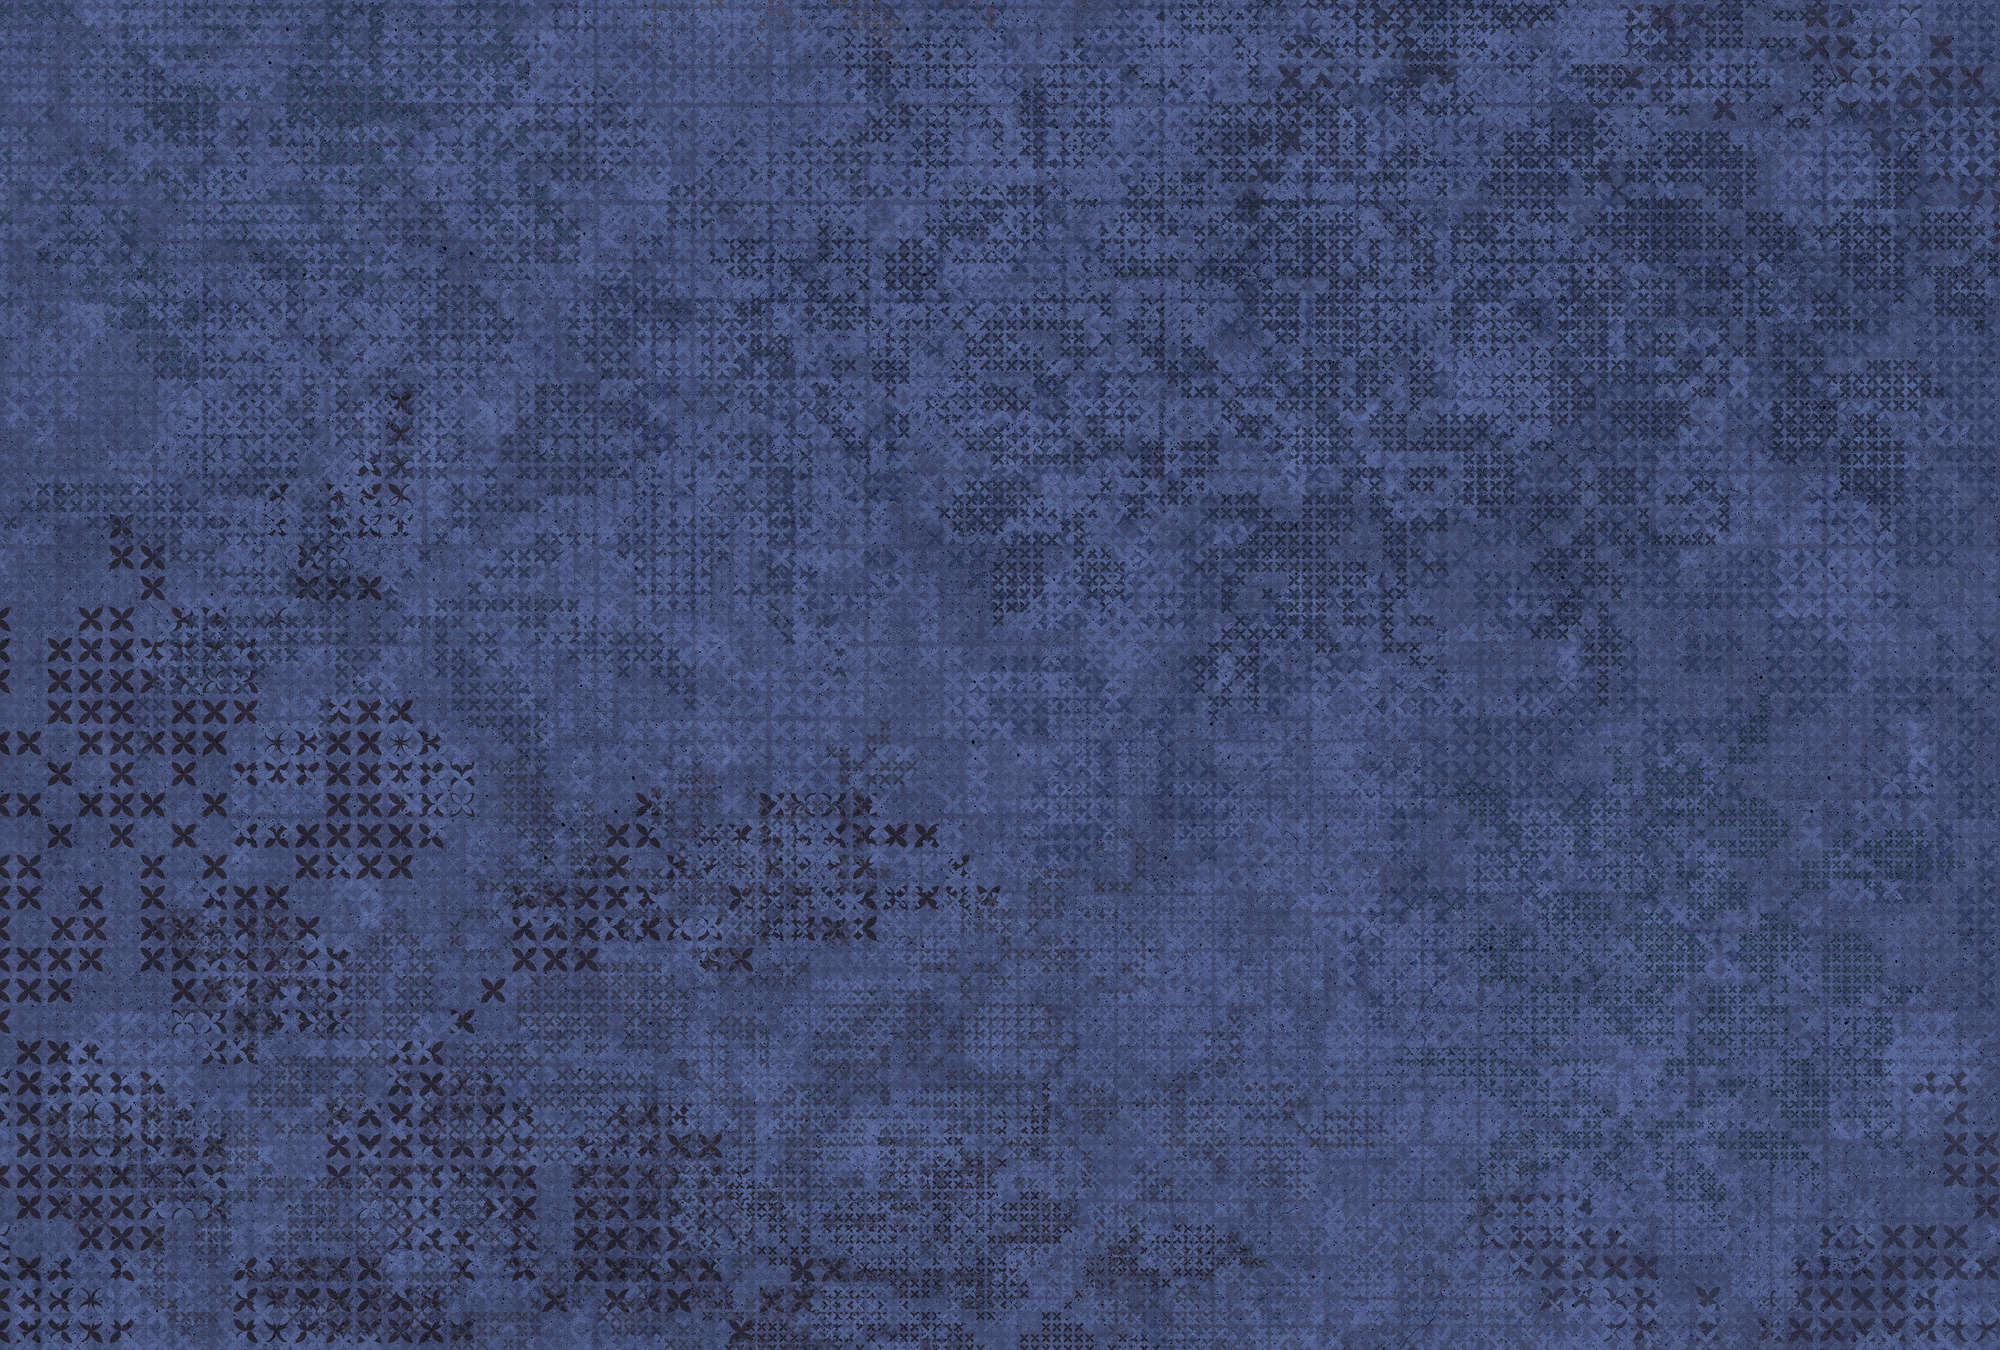             Photo wallpaper cross pattern in pixel style - blue, black
        